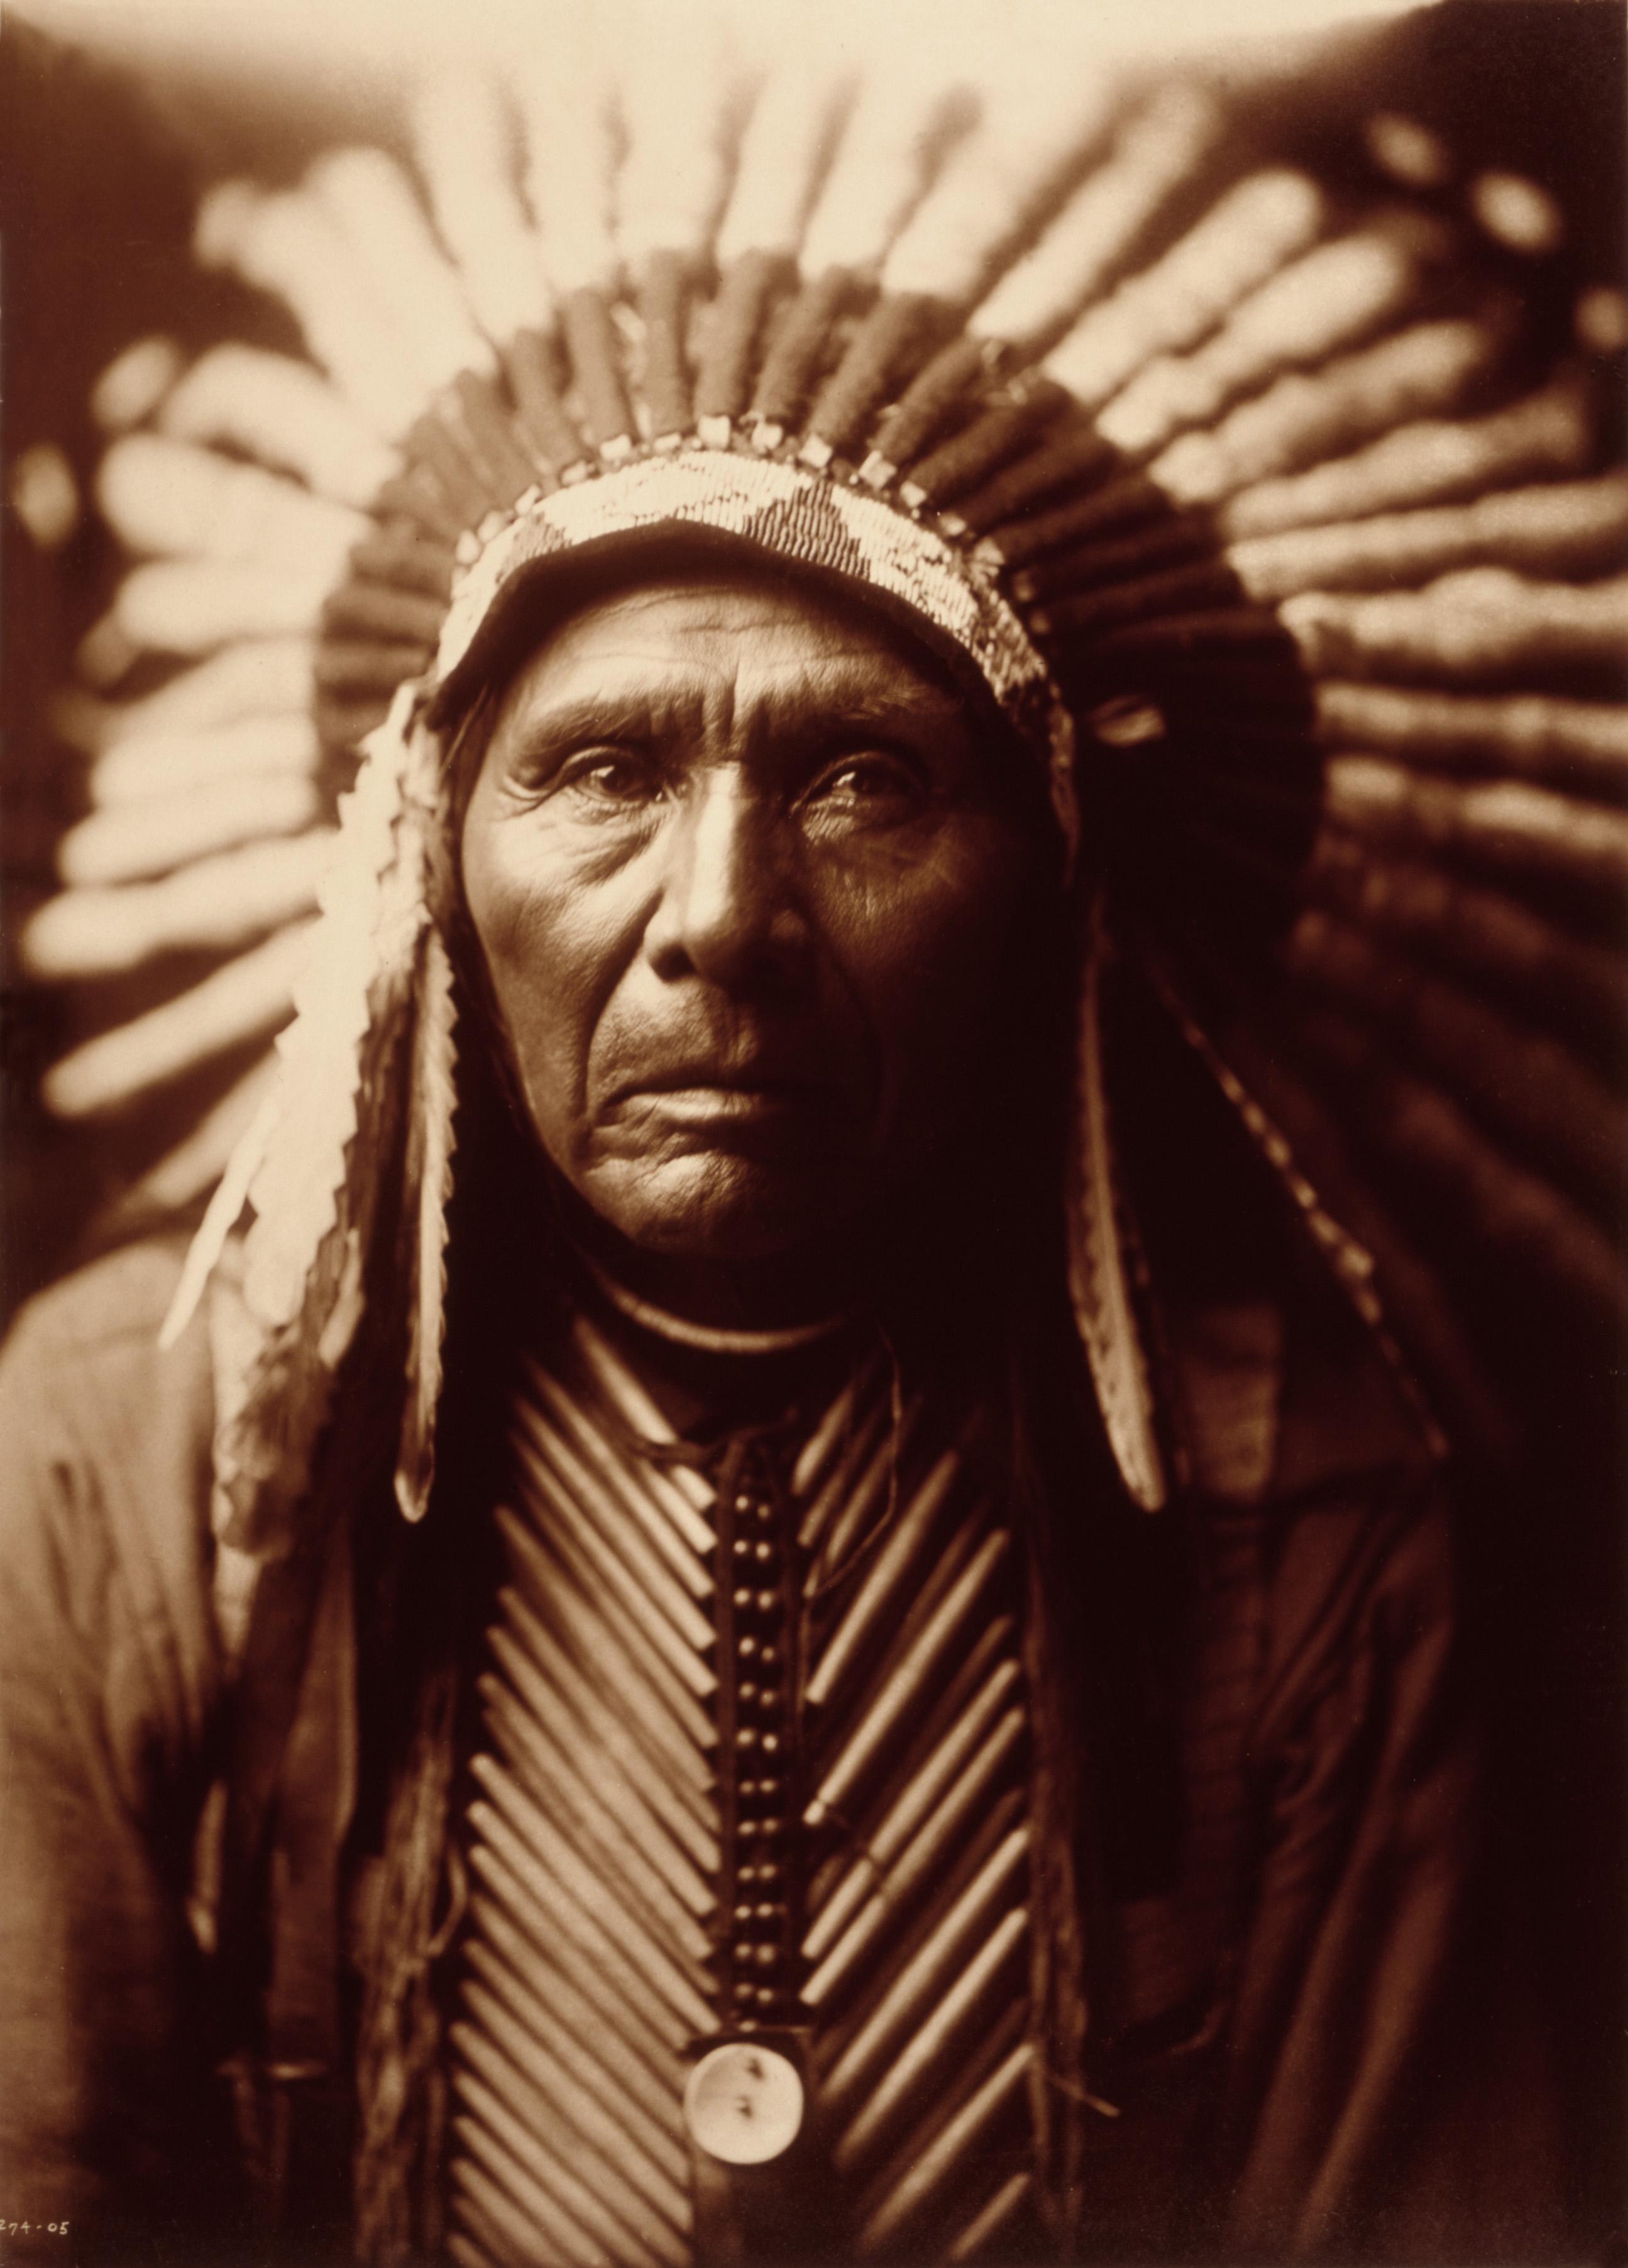 摄影史上的大师:爱德华·柯蒂斯和他眼中的北美印第安人